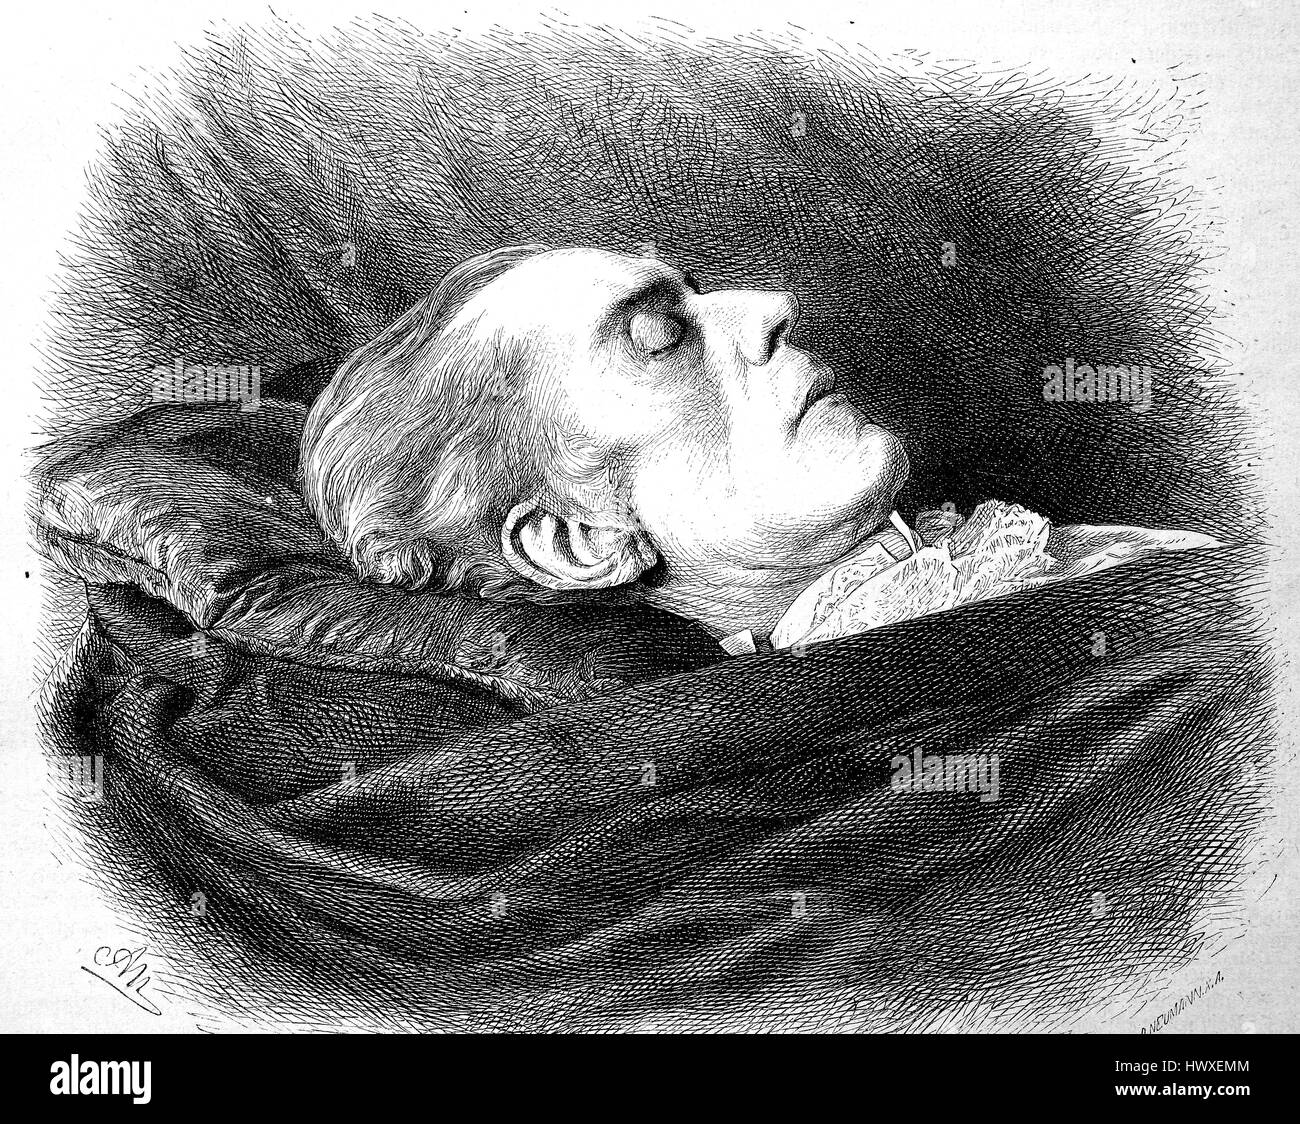 David Friedrich Strauss auf dem Sterbebett, 27. Januar 1808 in Ludwigsburg - 8. Februar 1874, war ein deutscher Schriftsteller, Philosoph und Theologe, Deutschland, Reproduktion eines Bildes, Holzschnitt aus dem Jahr 1881, digital verbessert Stockfoto